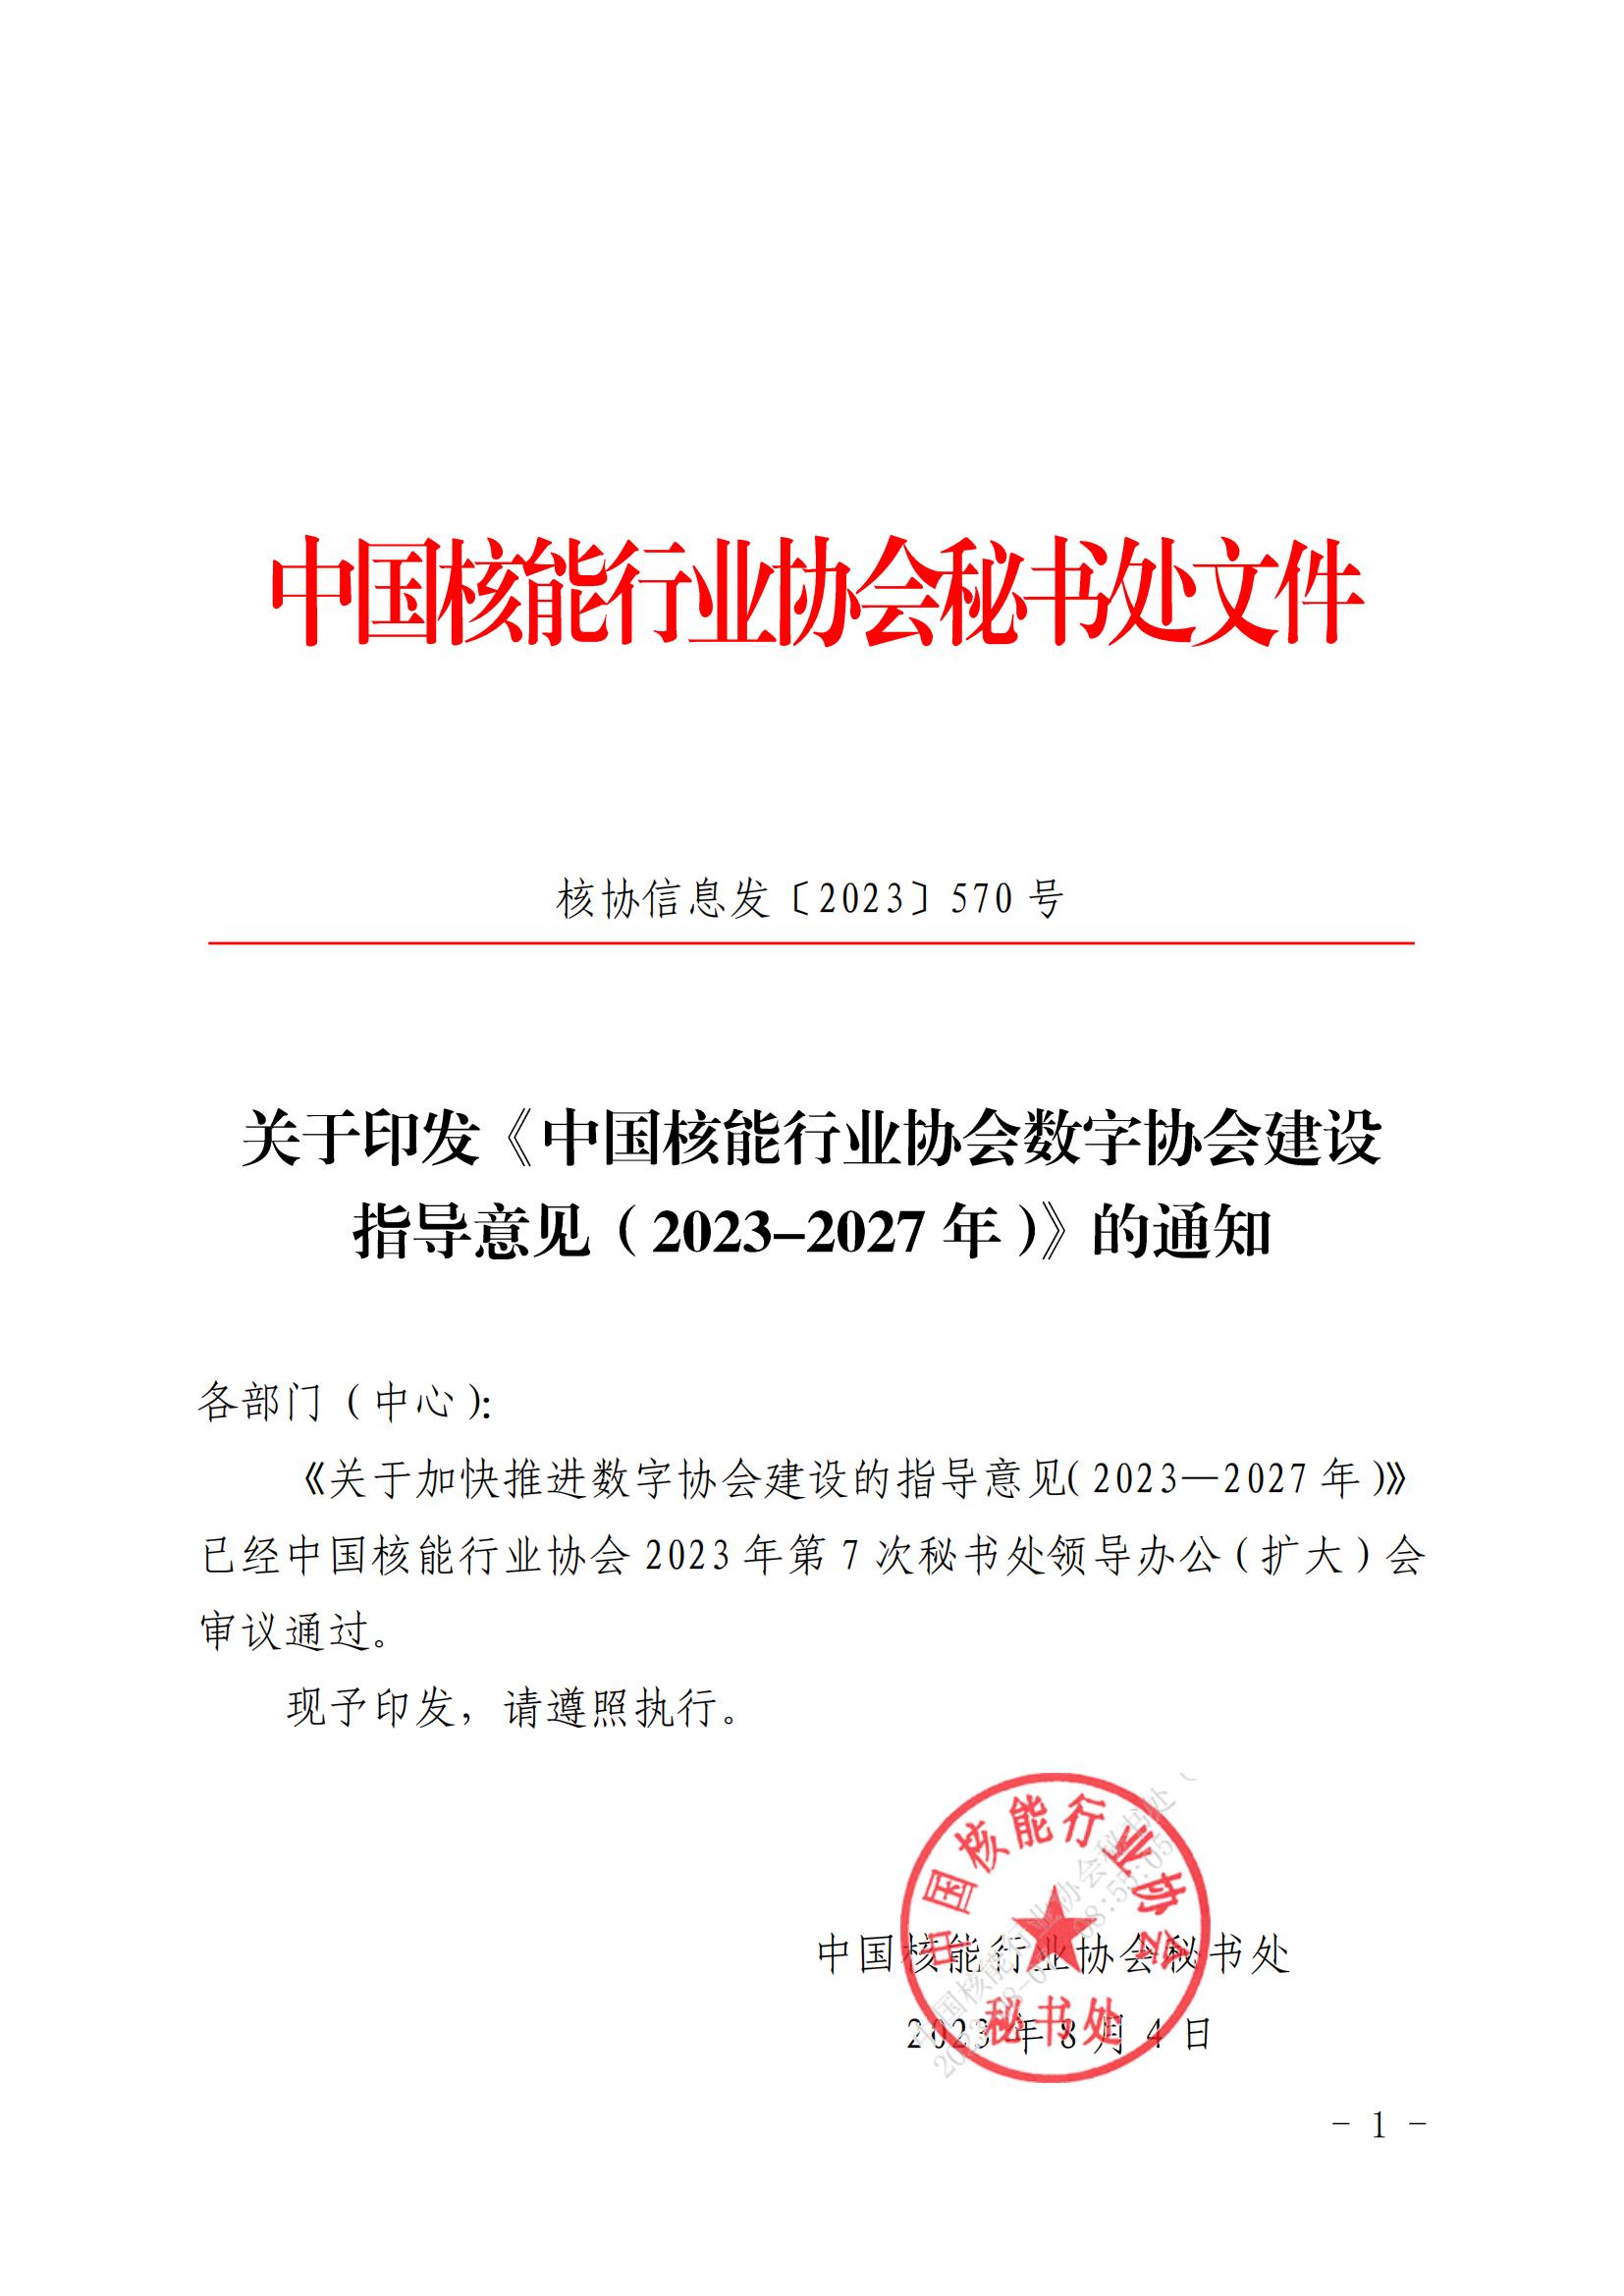 核协信息发〔2023〕570号 关于印发《中国核能行业协会数字协会建设指导意见（2023-2027年）》的通知_00.jpg